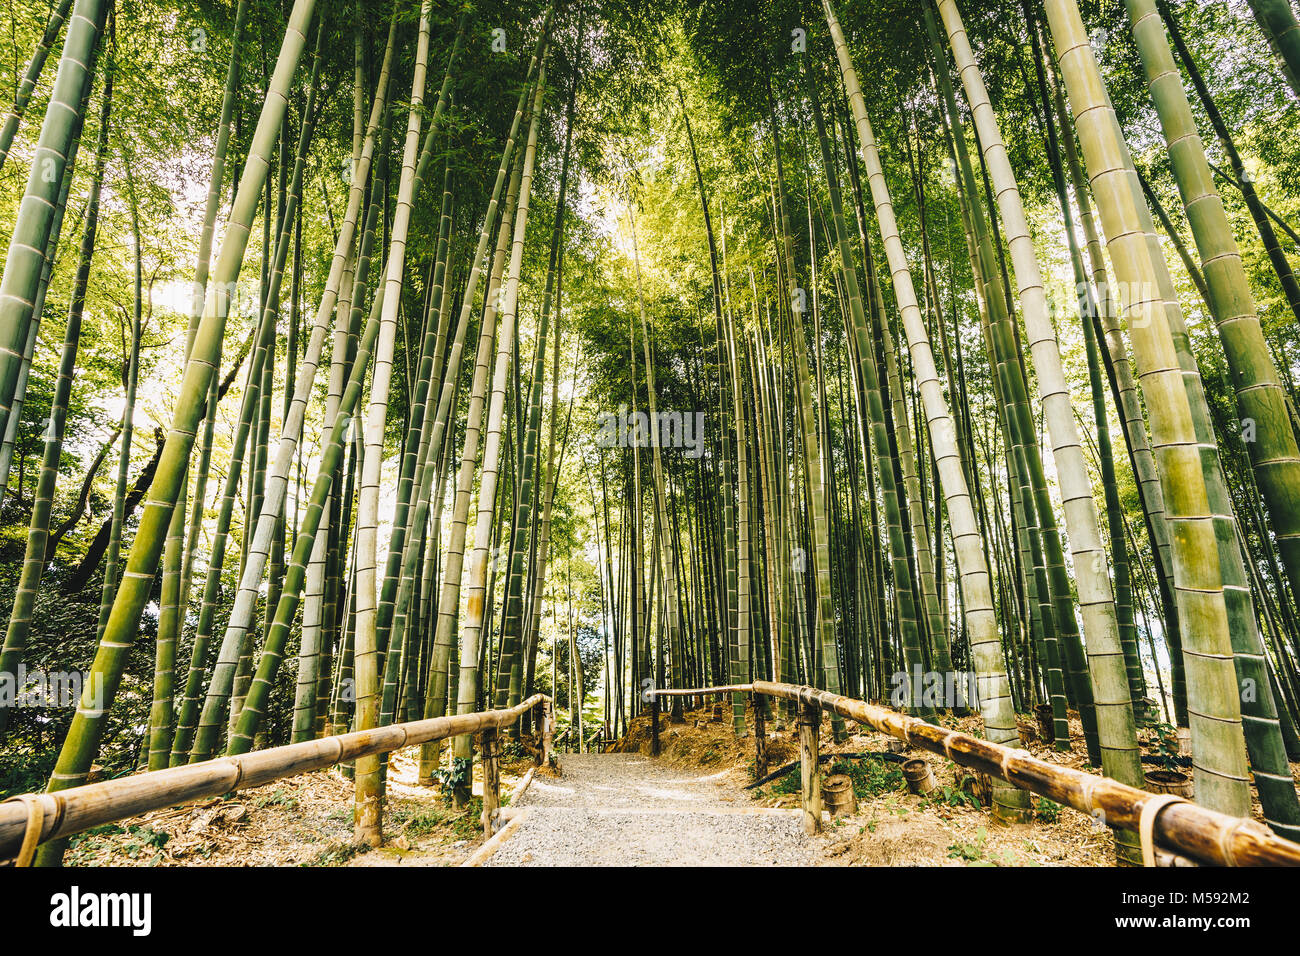 Bamboo forest Arashiyama near Kyoto, Japan Stock Photo